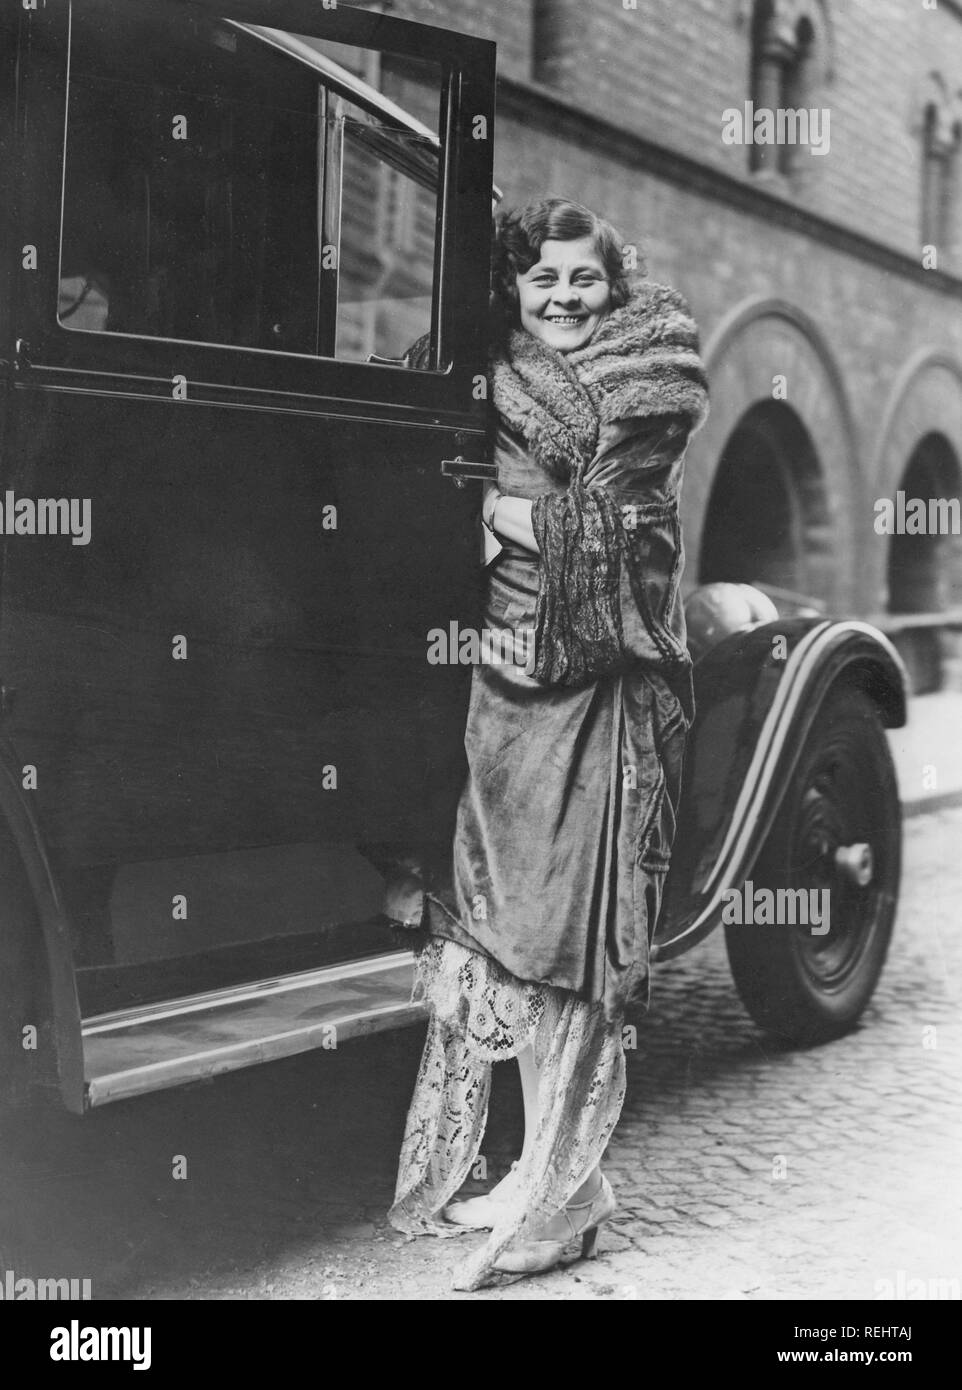 Damenmode In Den 1920er Jahren Eine Junge Frau In Einem Typischen 20er Jahre Kleidung Stand Neben